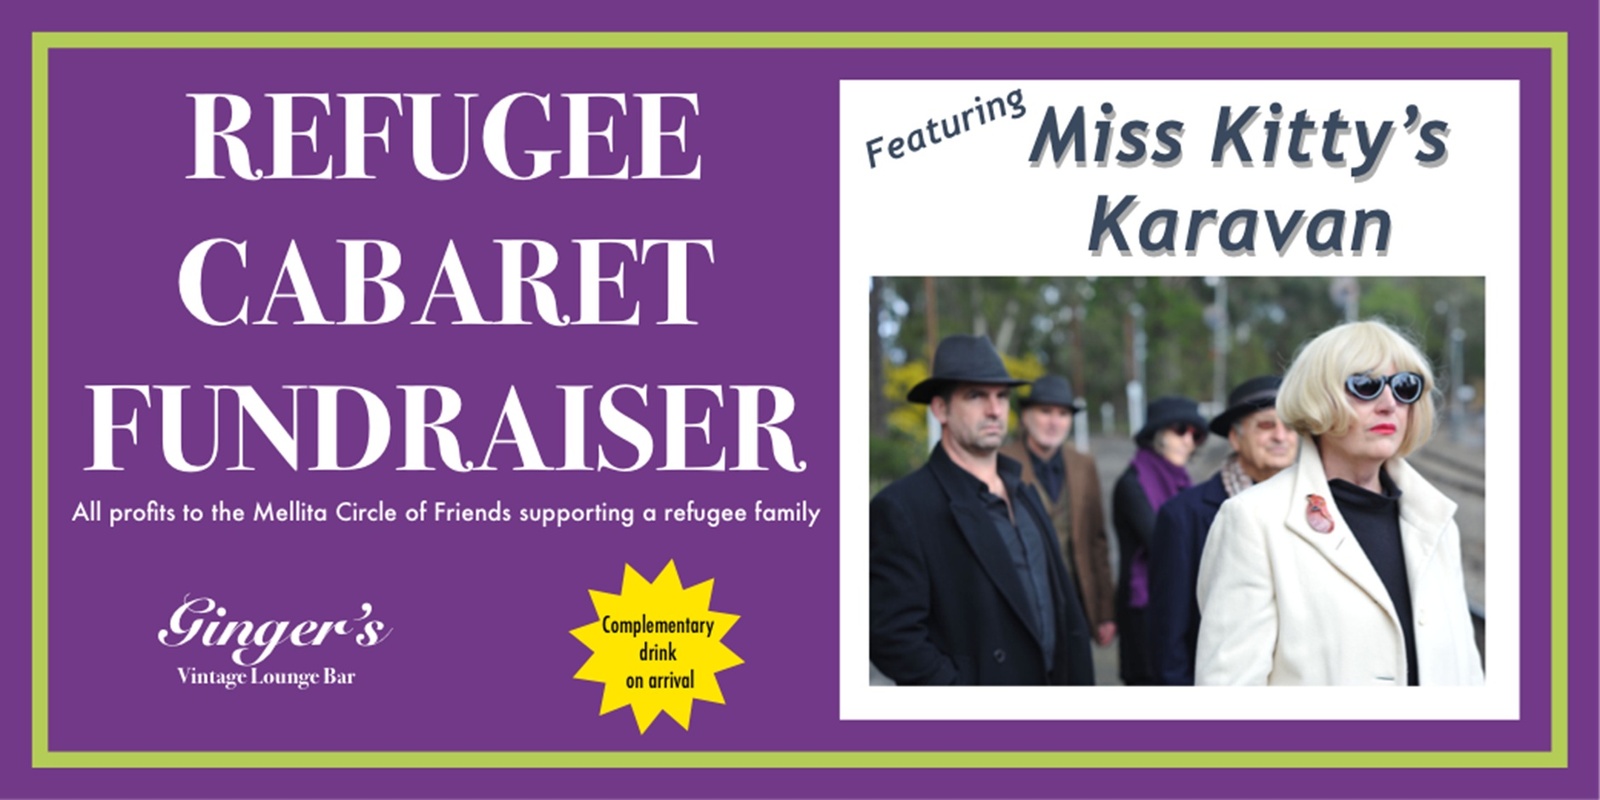 Banner image for Miss Kitty's Karavan Refugee Cabaret Fundraiser